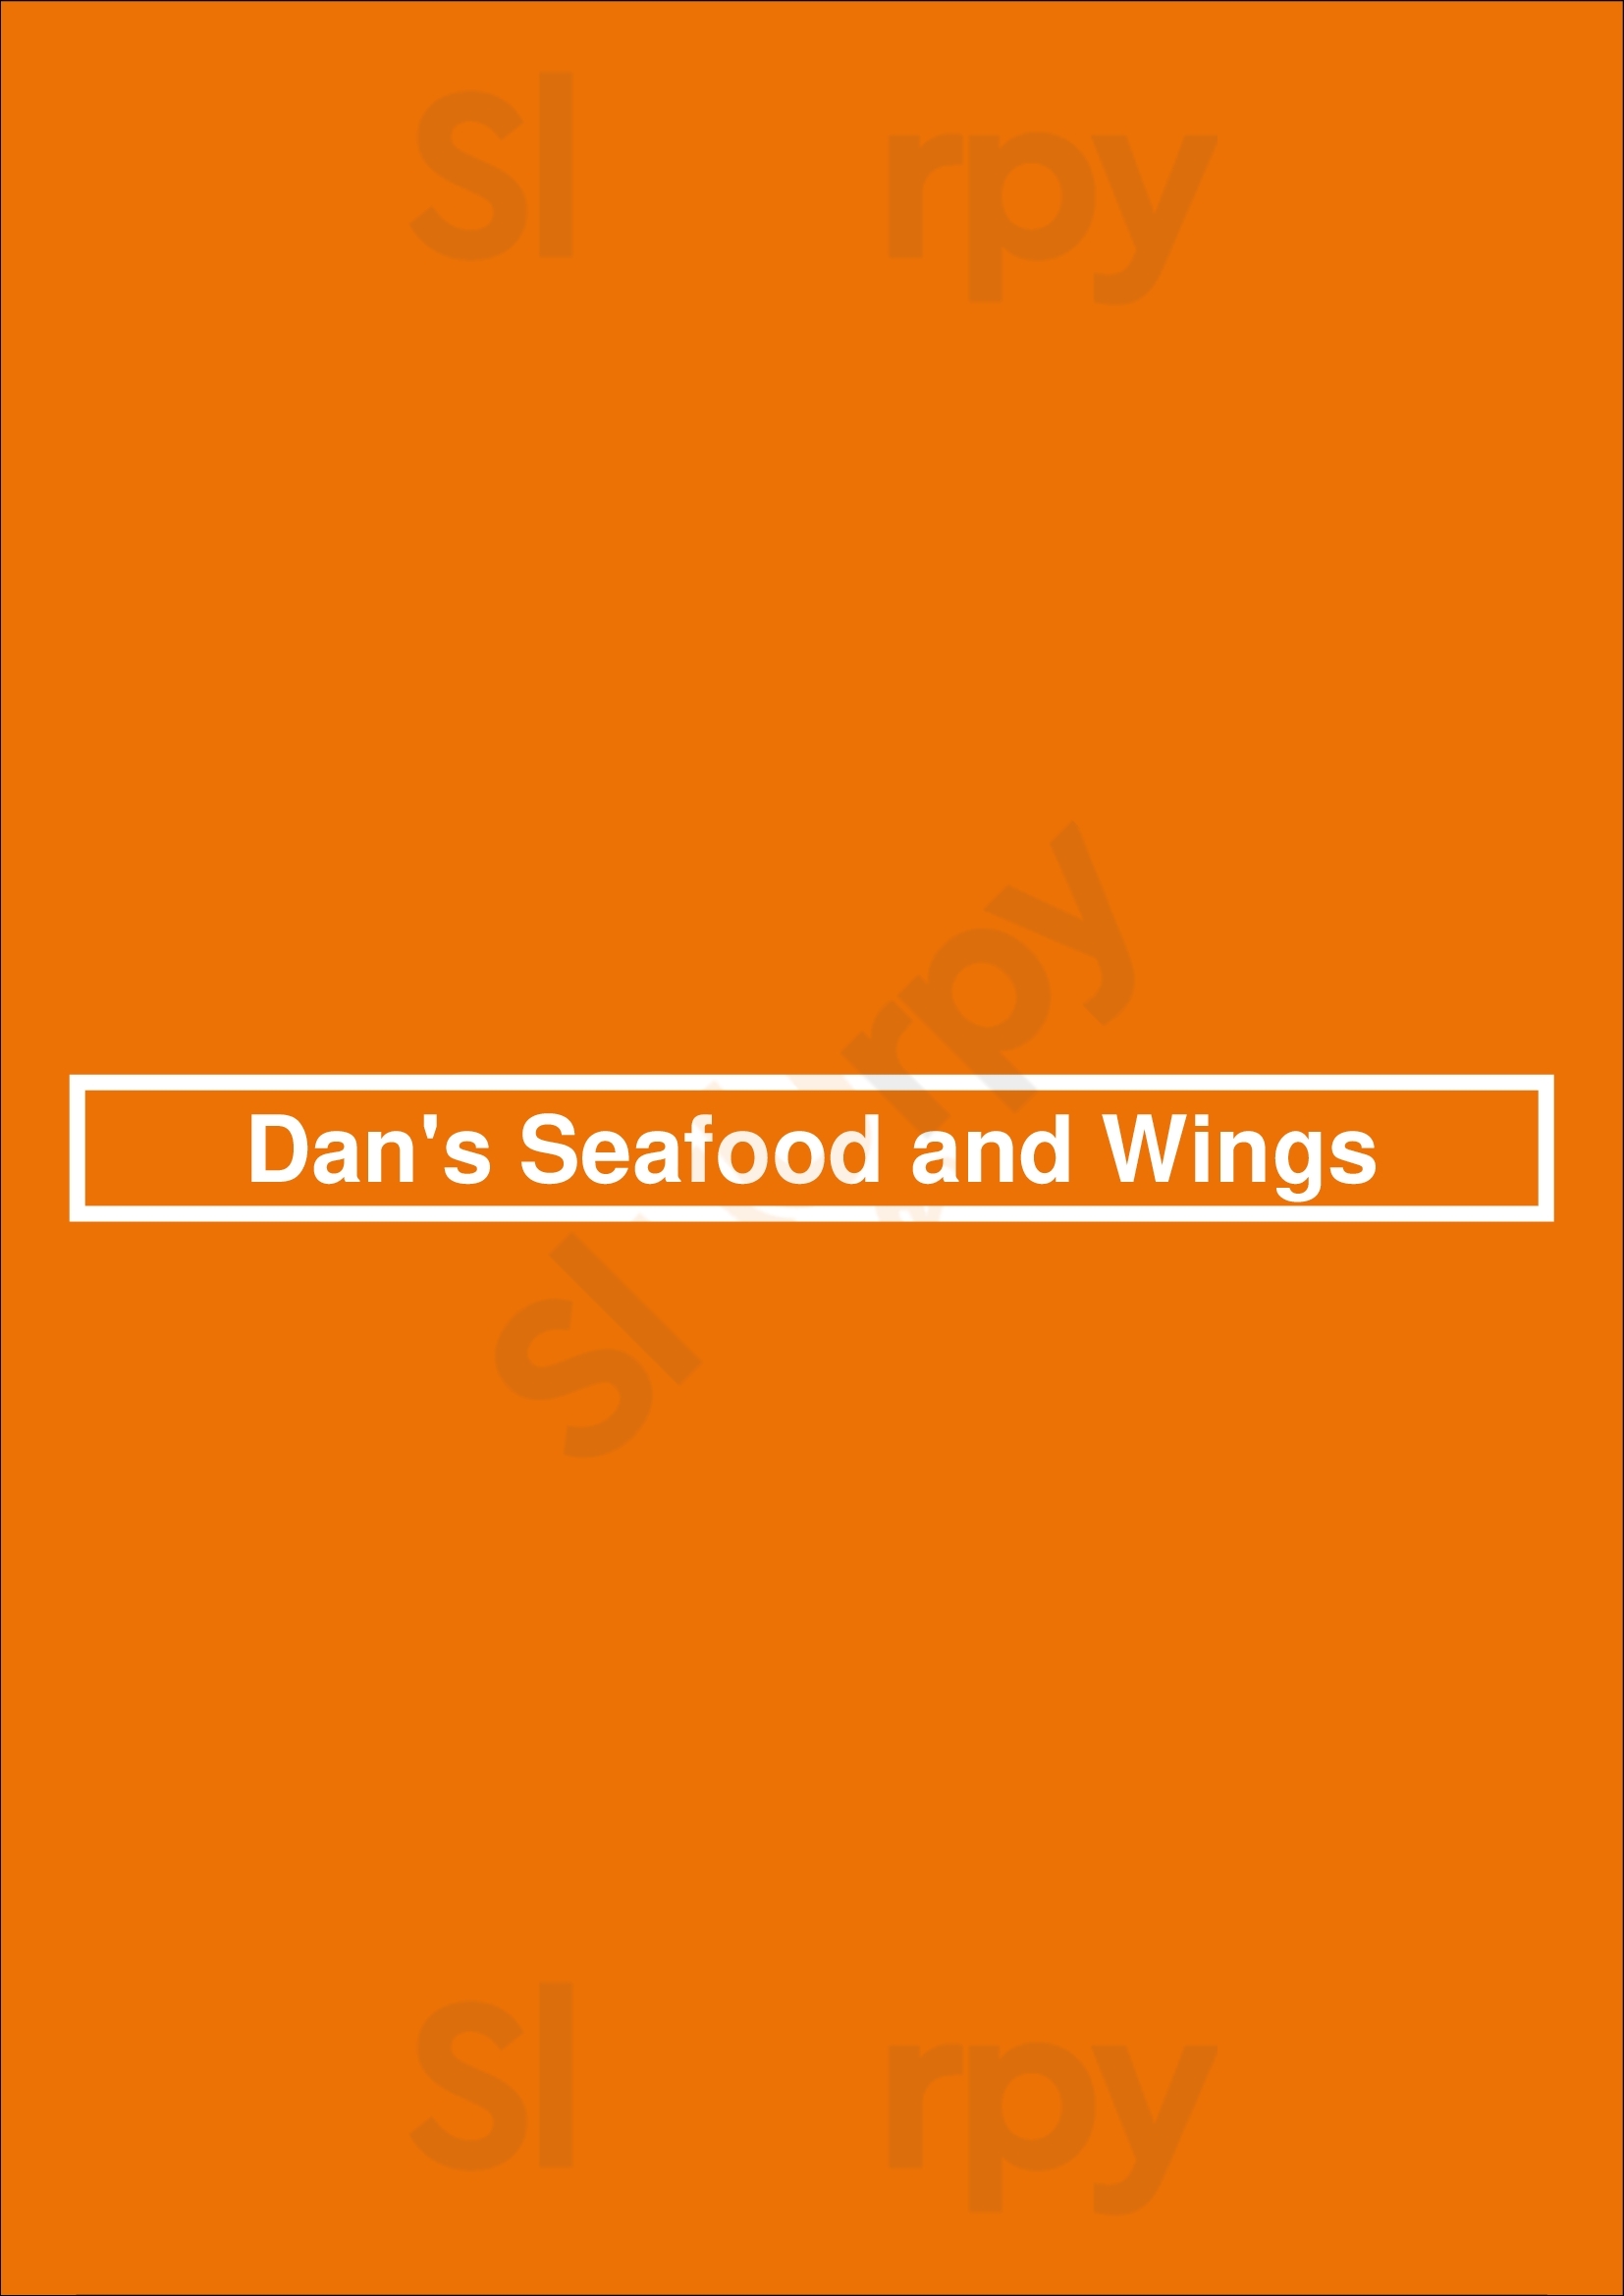 Dan's Seafood And Wings Houston Menu - 1